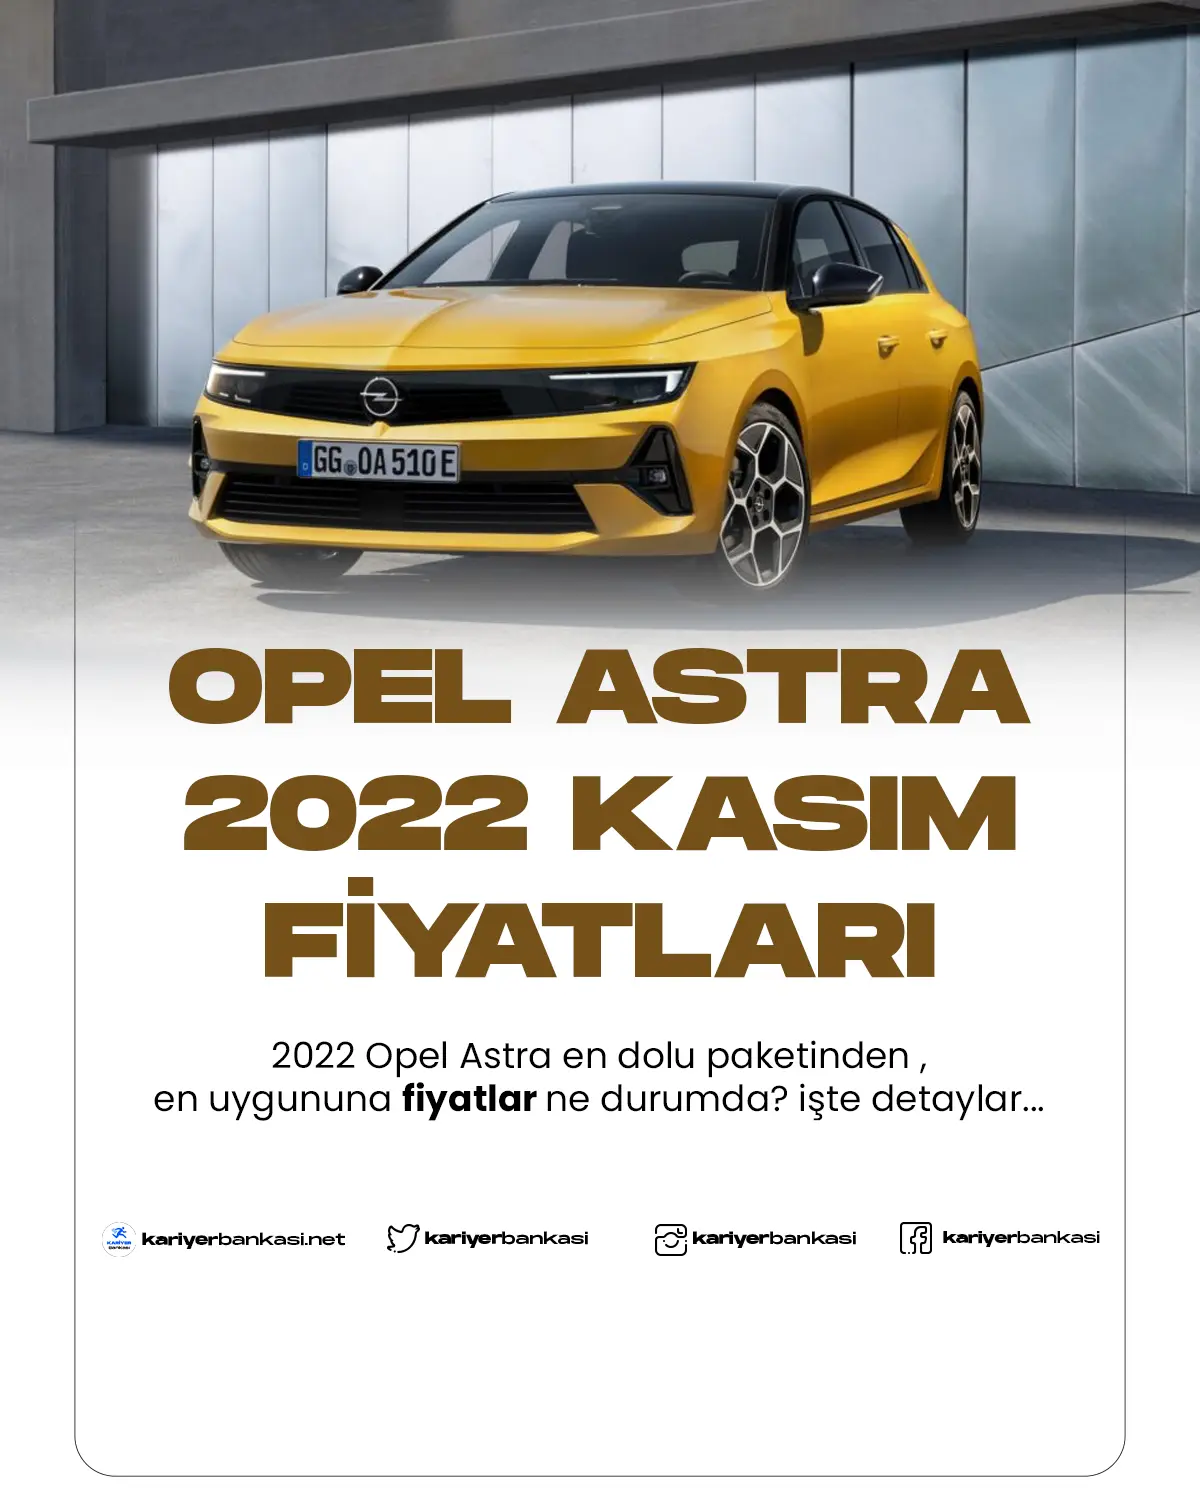 Opel Astra fiyatları